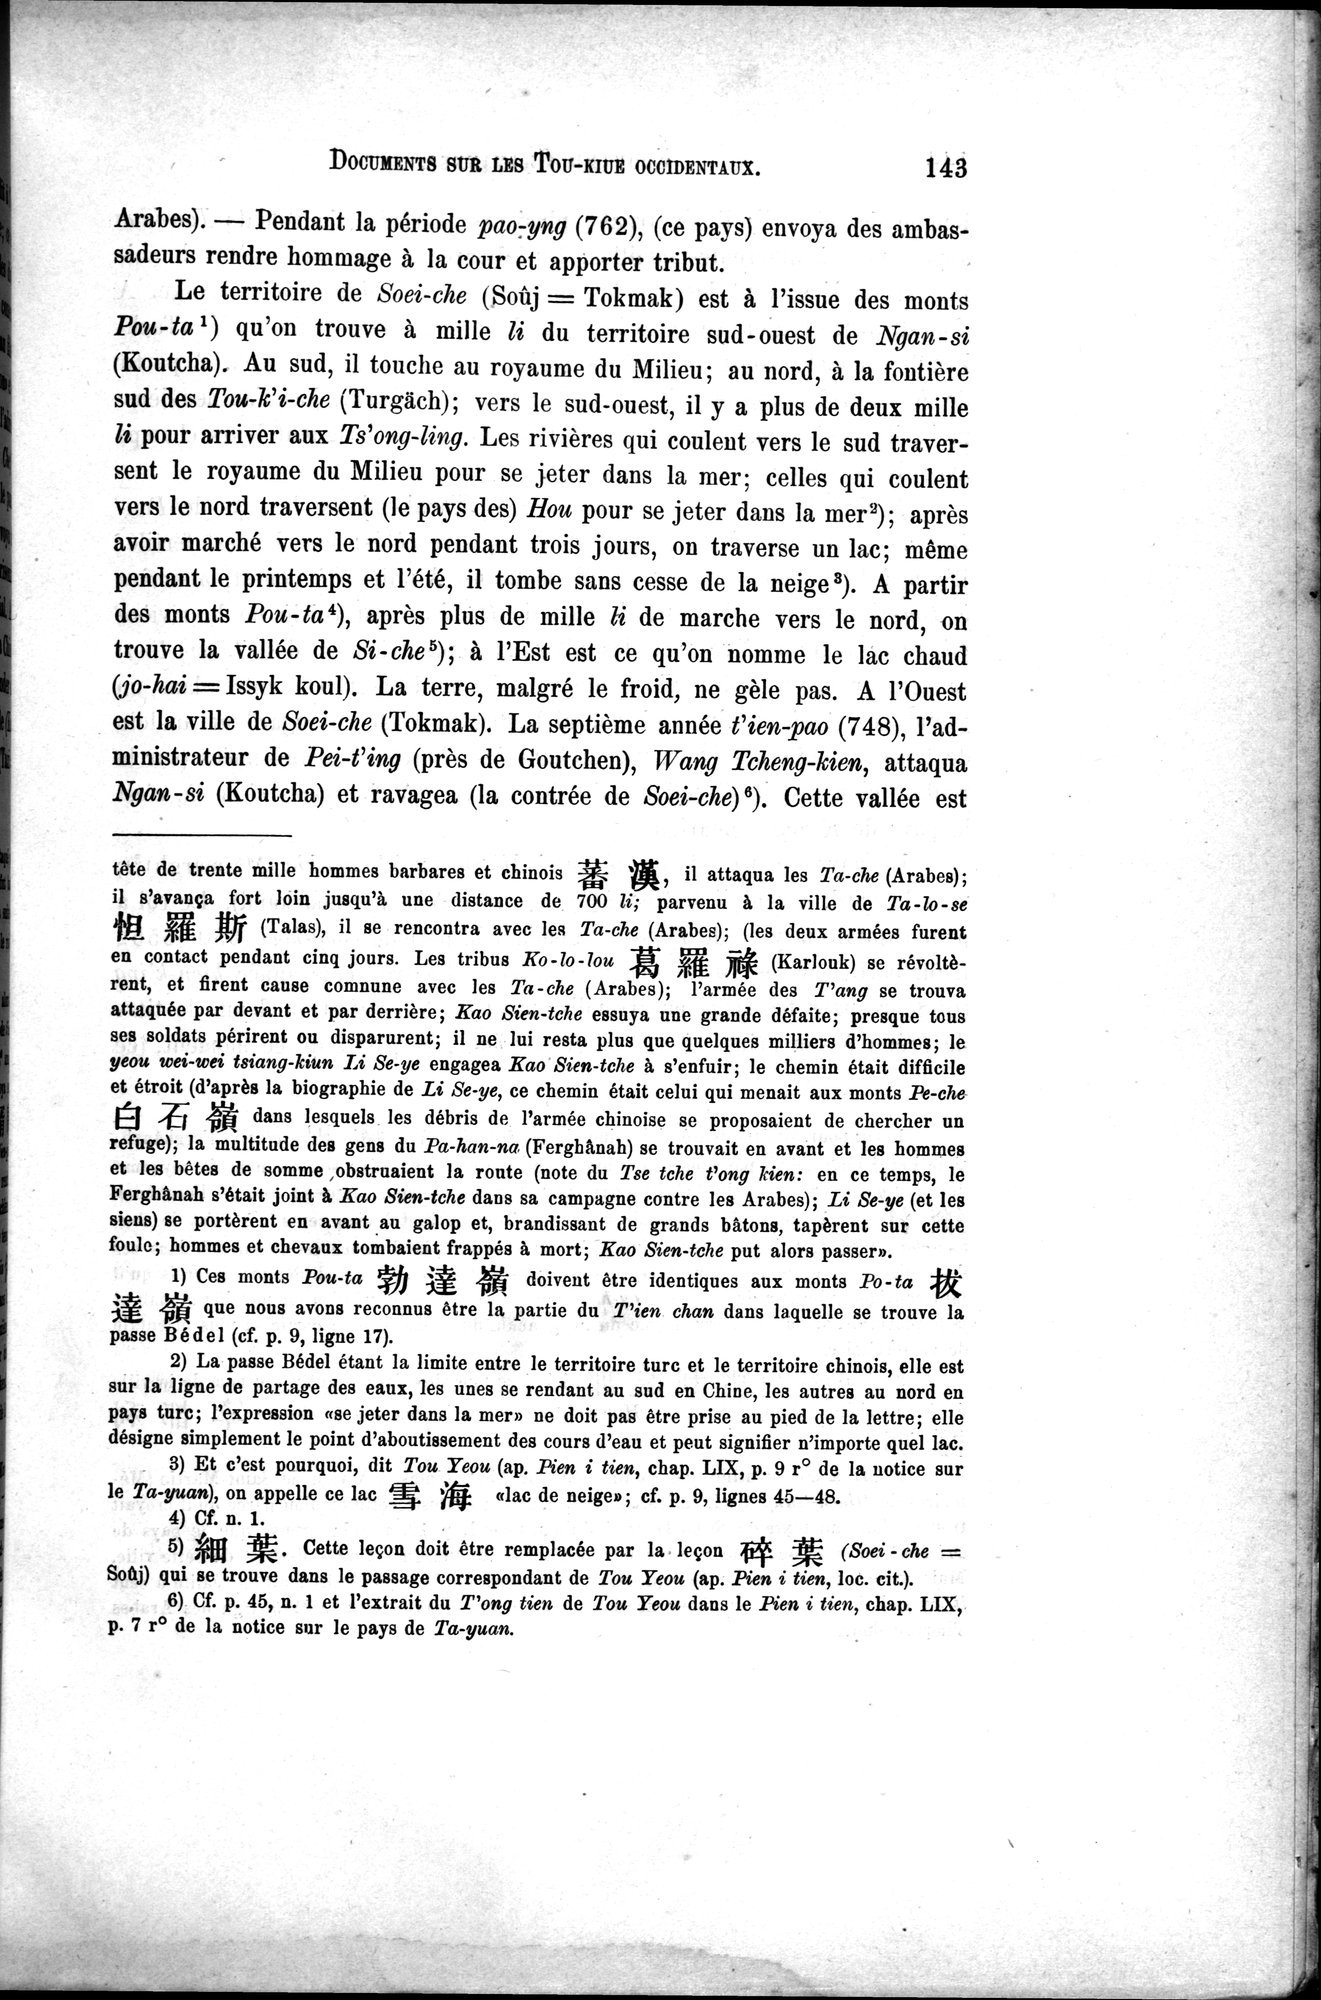 Documents sur les Tou-kiue (Turcs) occidentaux : vol.1 / Page 153 (Grayscale High Resolution Image)